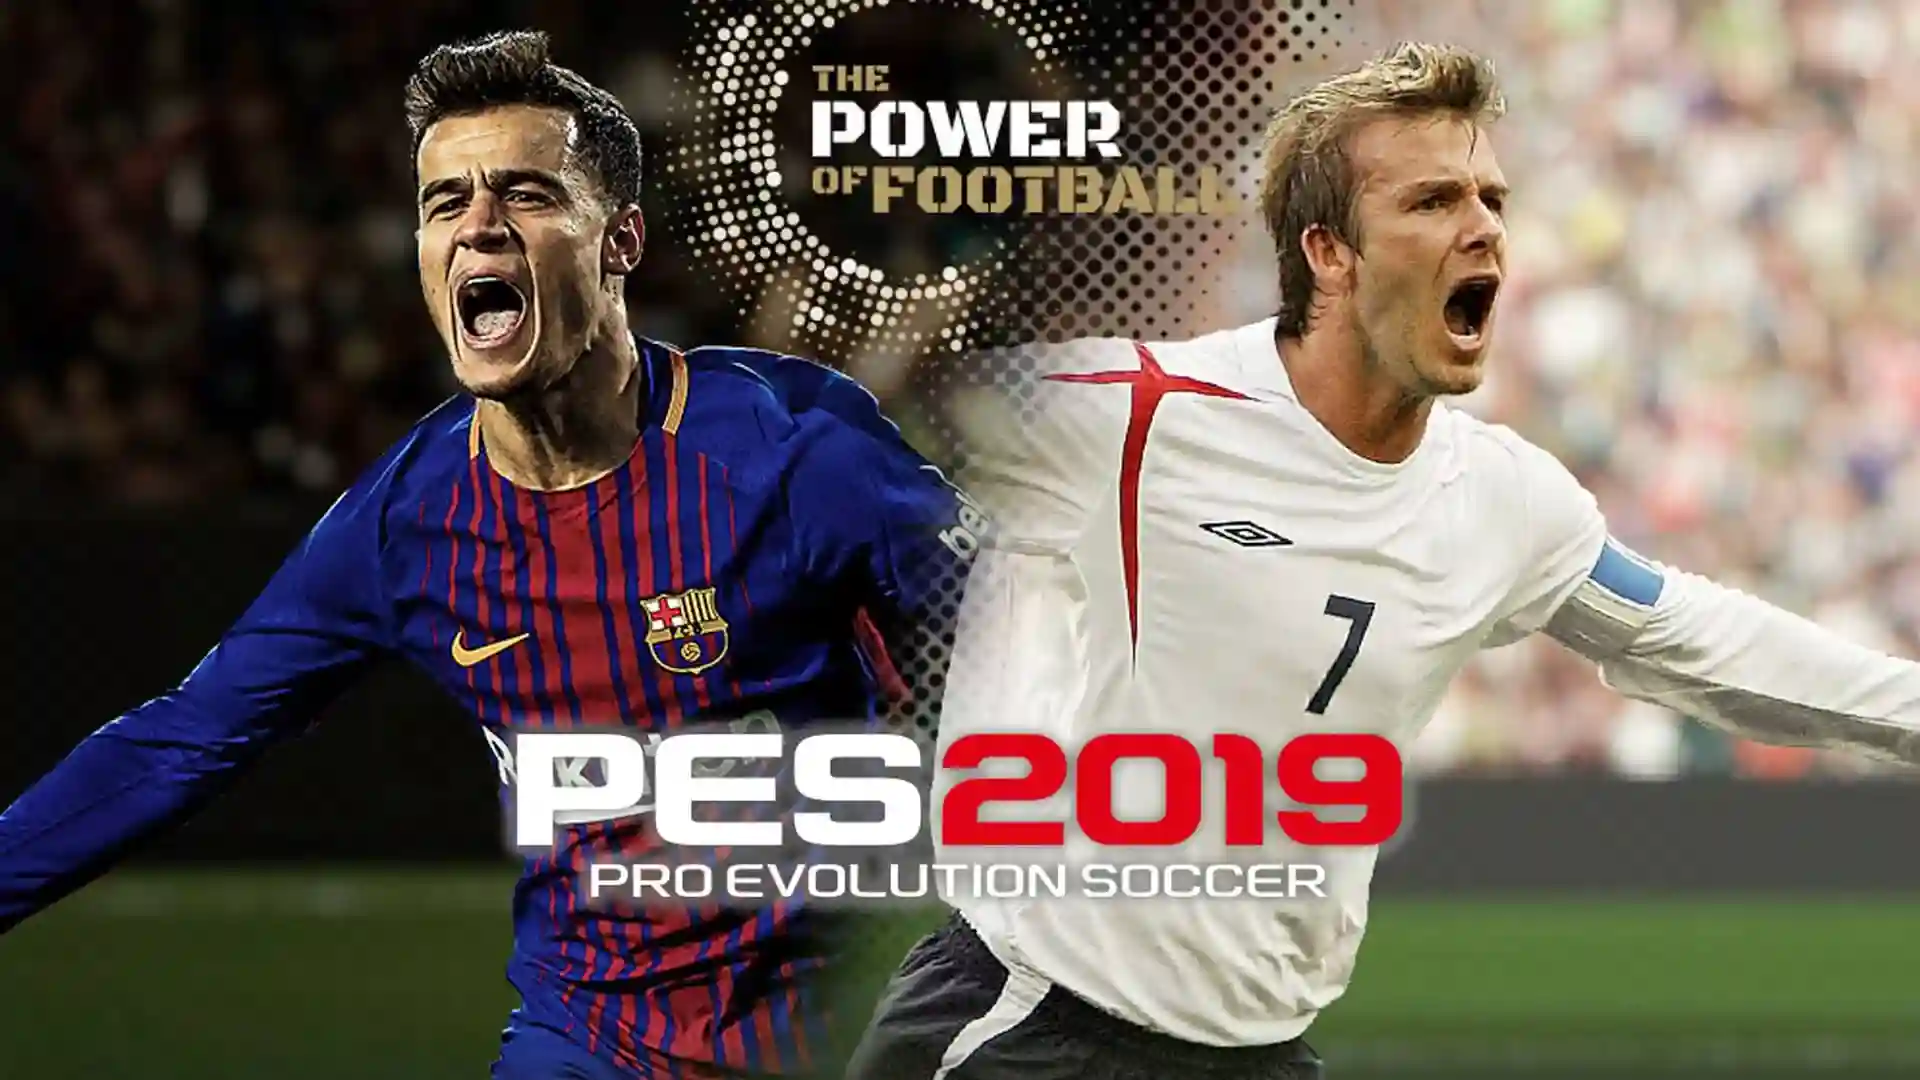 Pro Evolution Soccer PES 2019